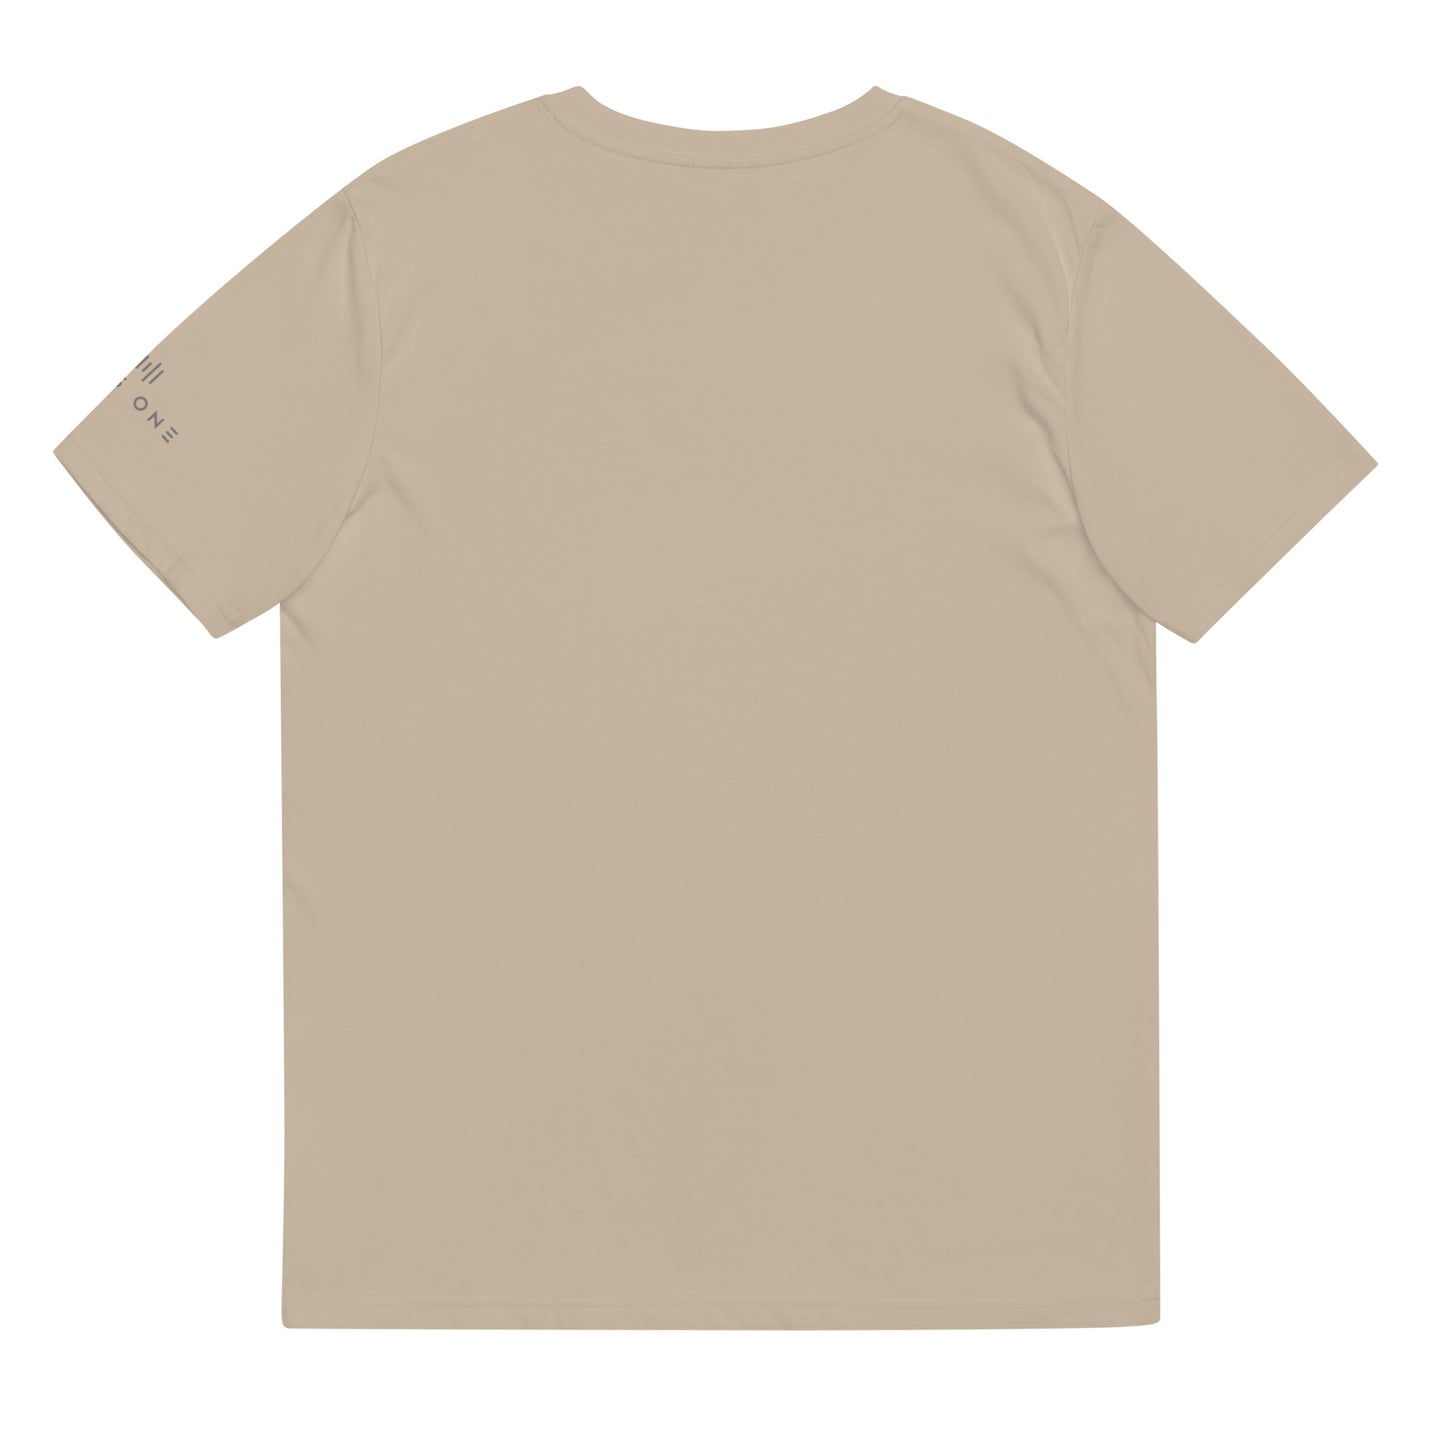 Tribe Mic-e (v3) Unisex organic cotton t-shirt